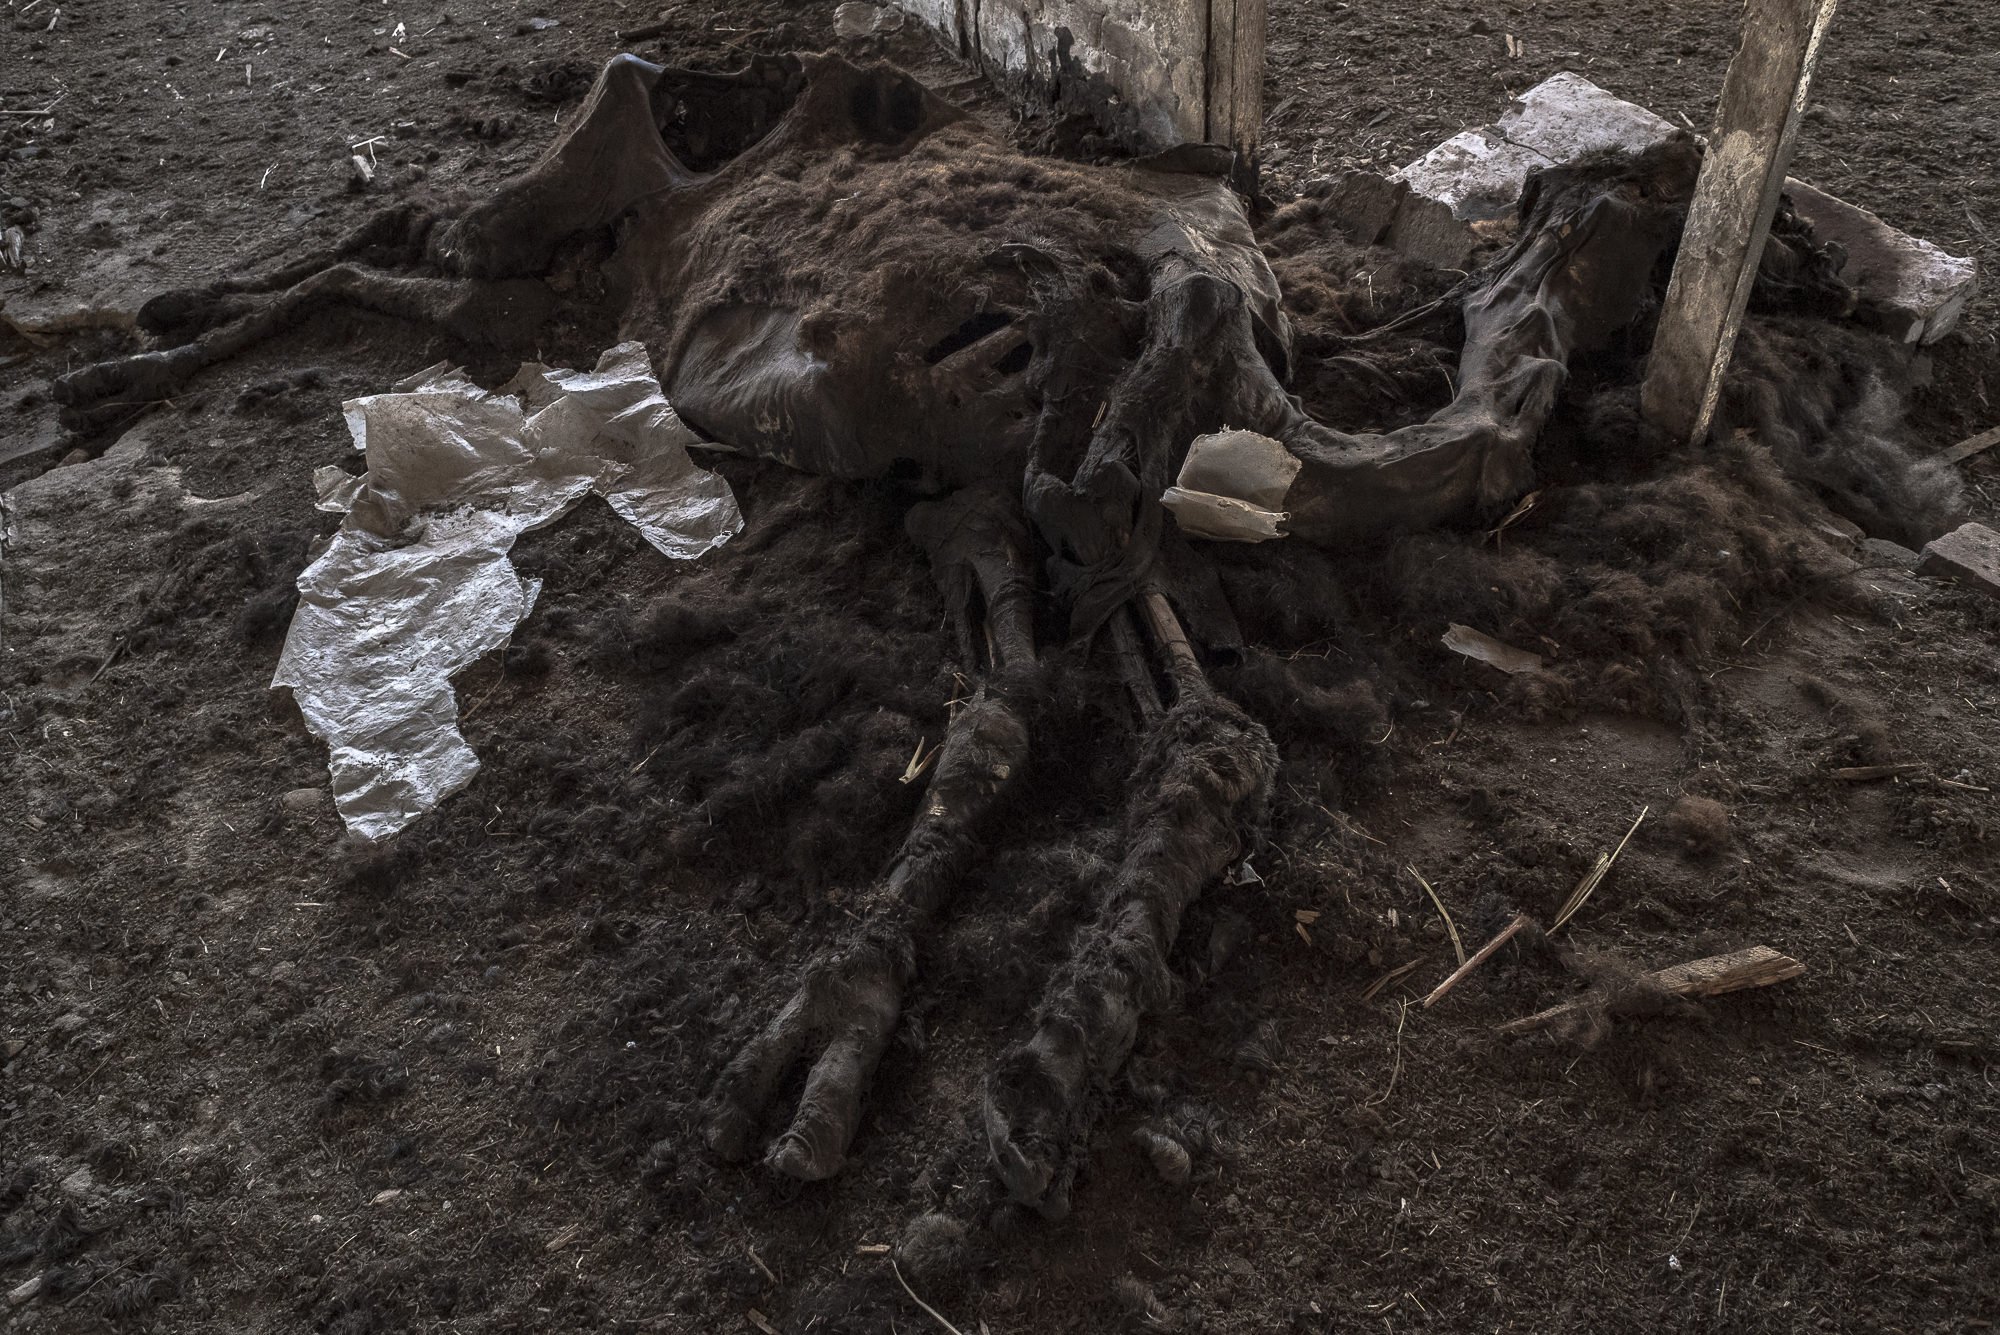 Huesos y pellejos, los restos del zoo bombardeado de Yampil